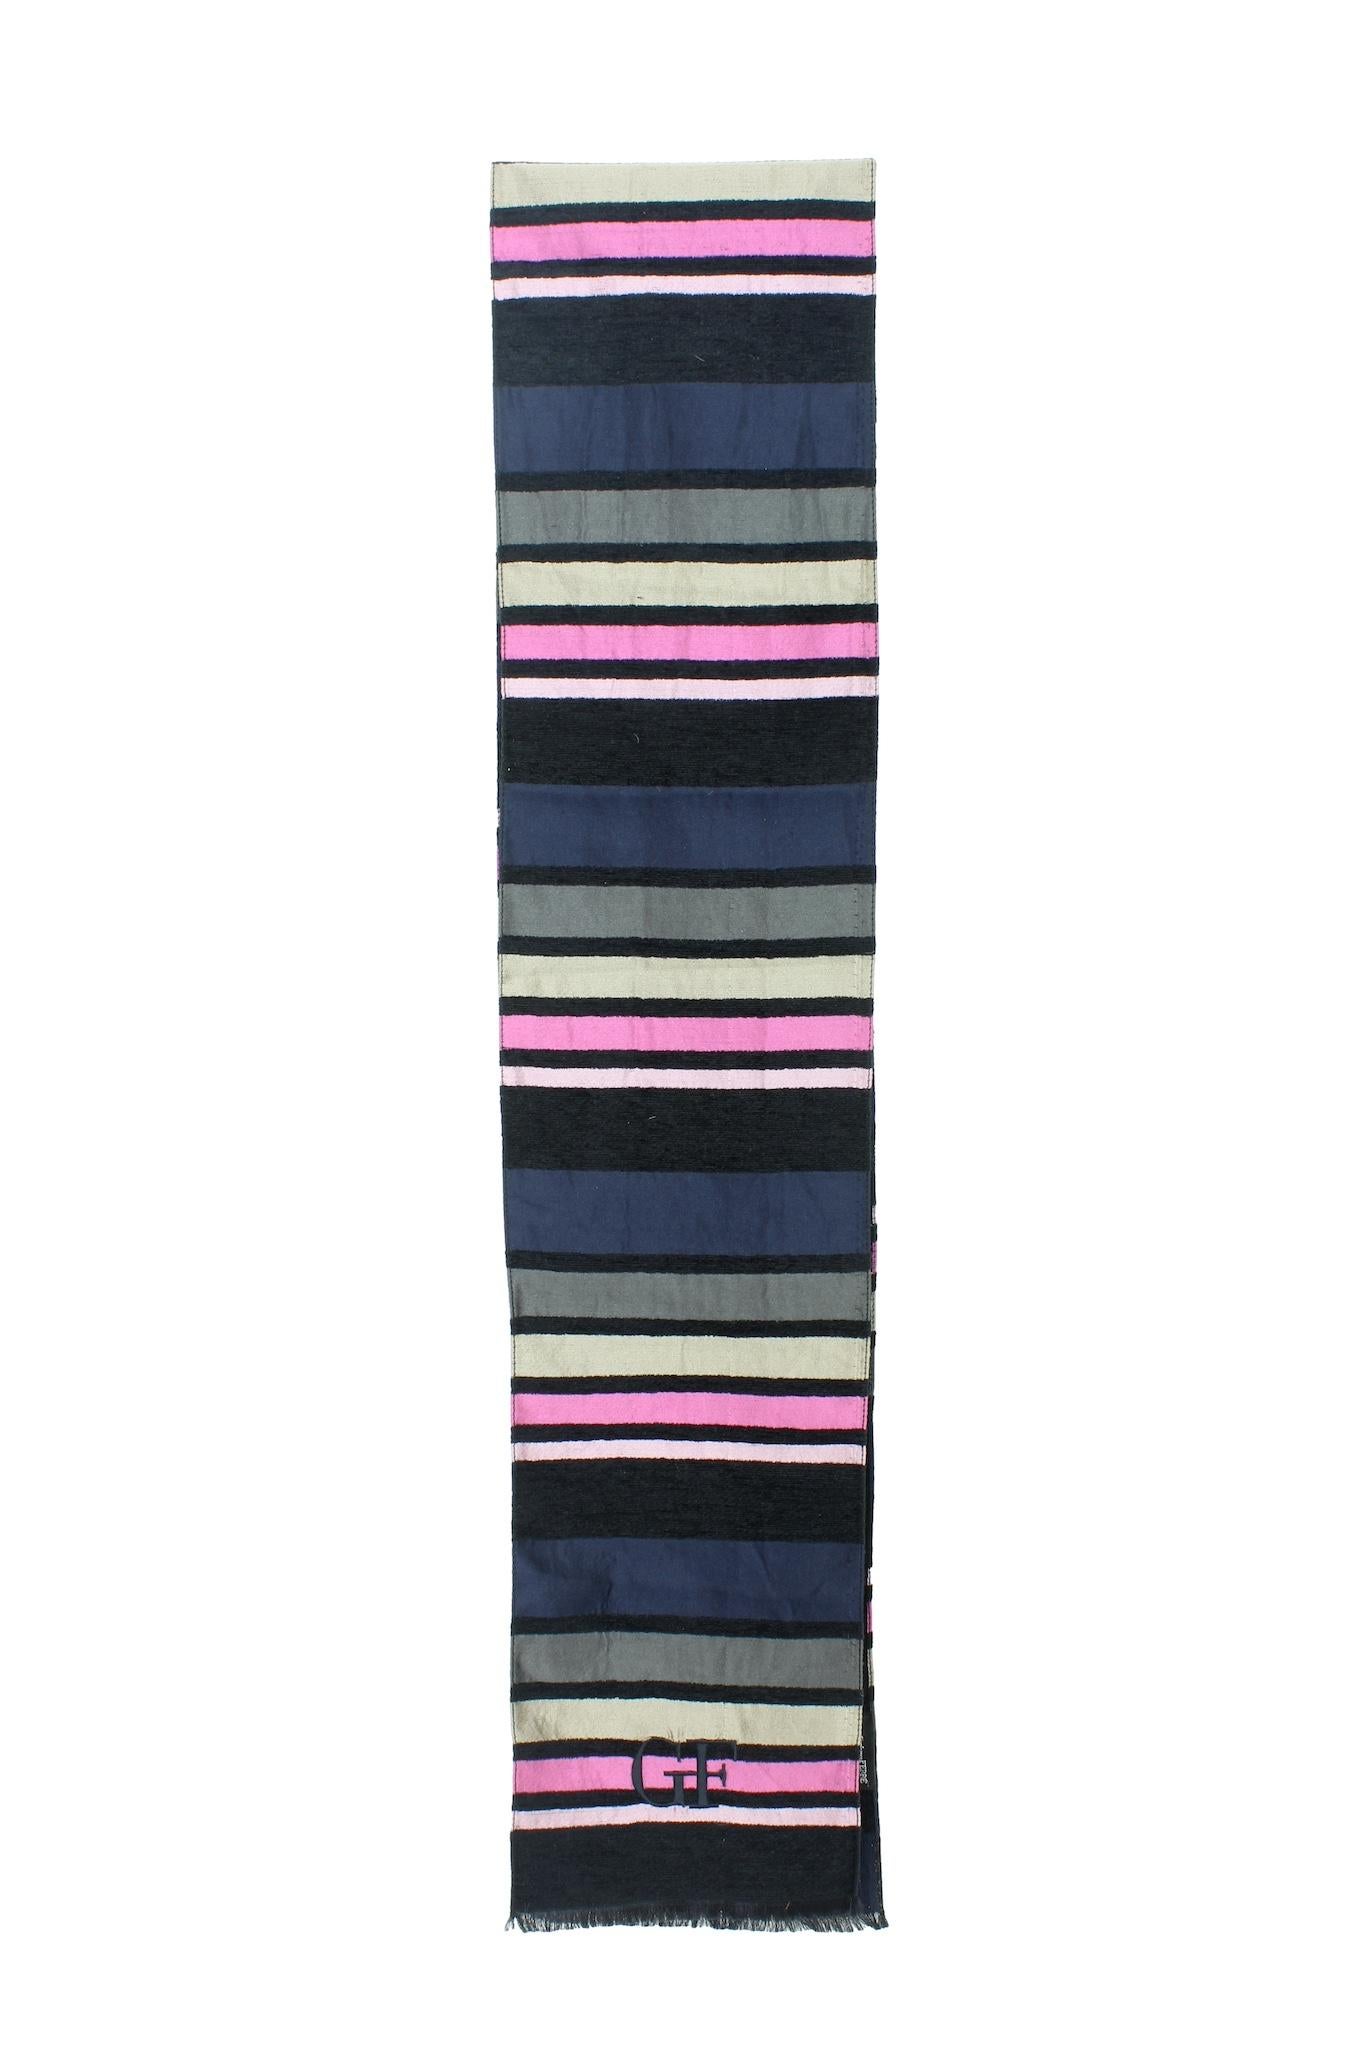 Gianfranco Ferrè, écharpe pour femme, années 2000. Étole à motif rayé, noir, rose et bleu, 82% laine, 18% soie. Fabriqué en Italie.

Dimensions : 190 x 19 cm